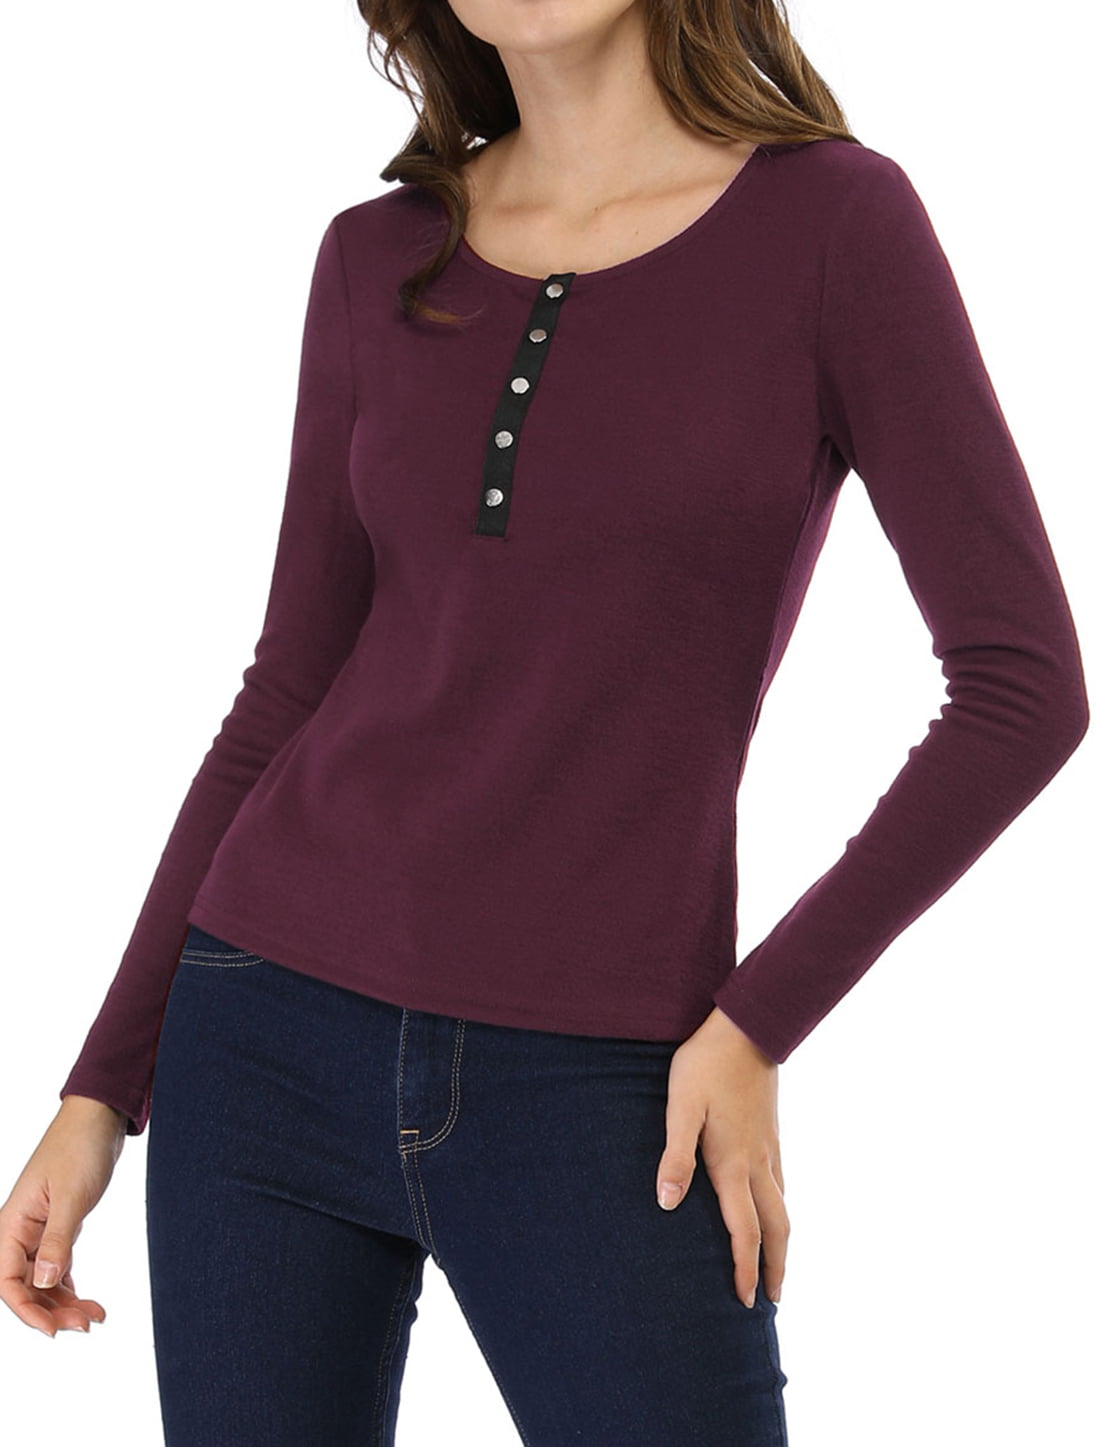 Unique Bargains - Women's Long Sleeve Knit Top Henley Neck Button Shirt ...